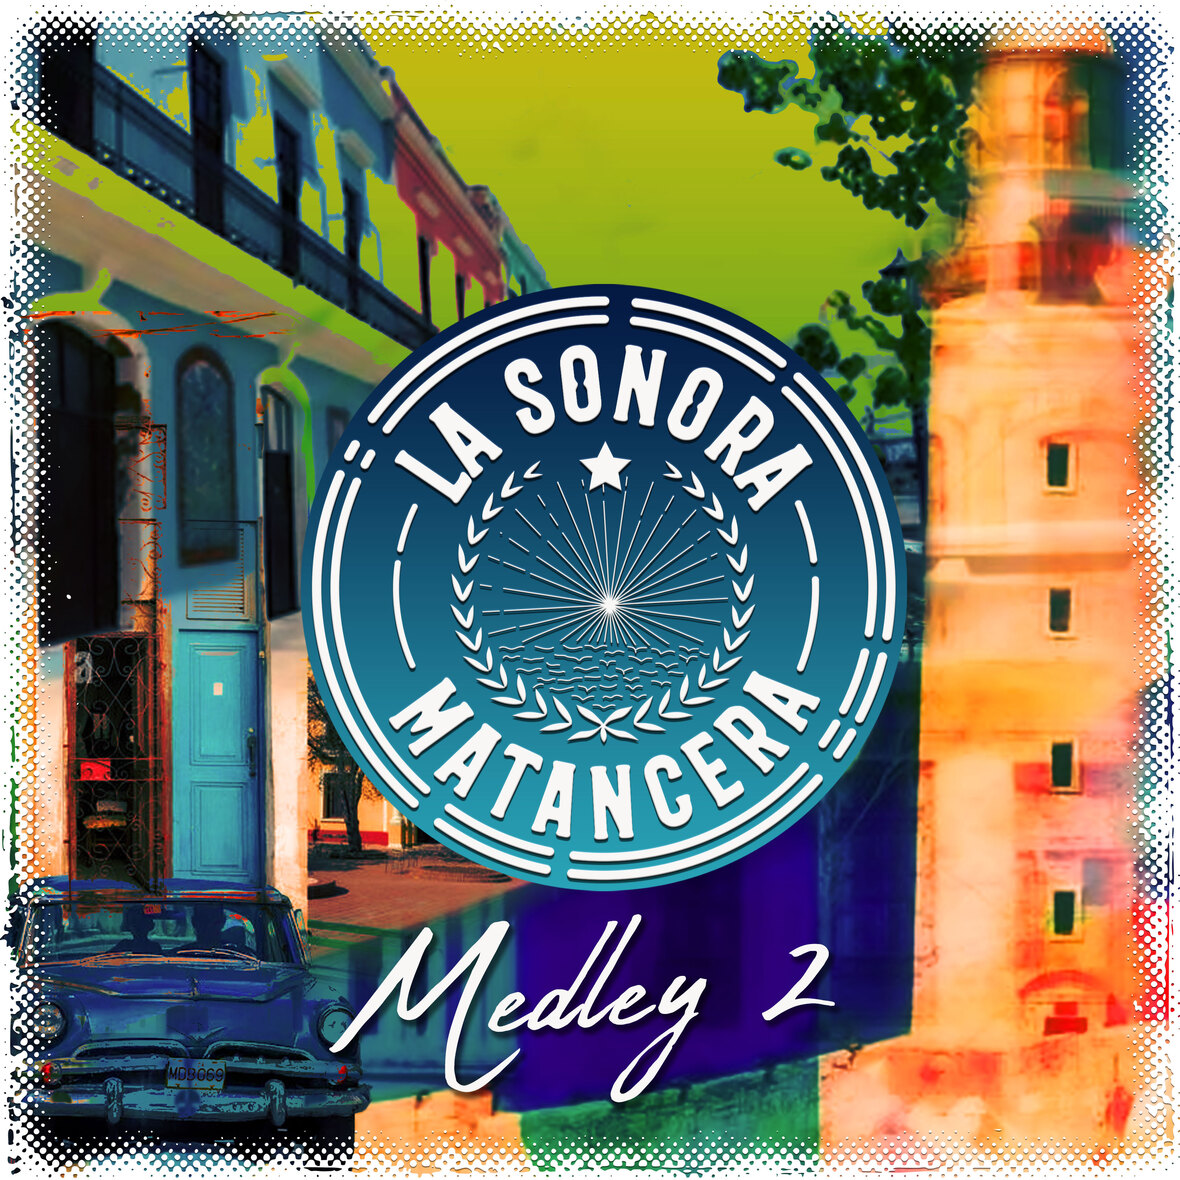 LA SONORA MATANCERA lanzan nueva producción “Medley 2”